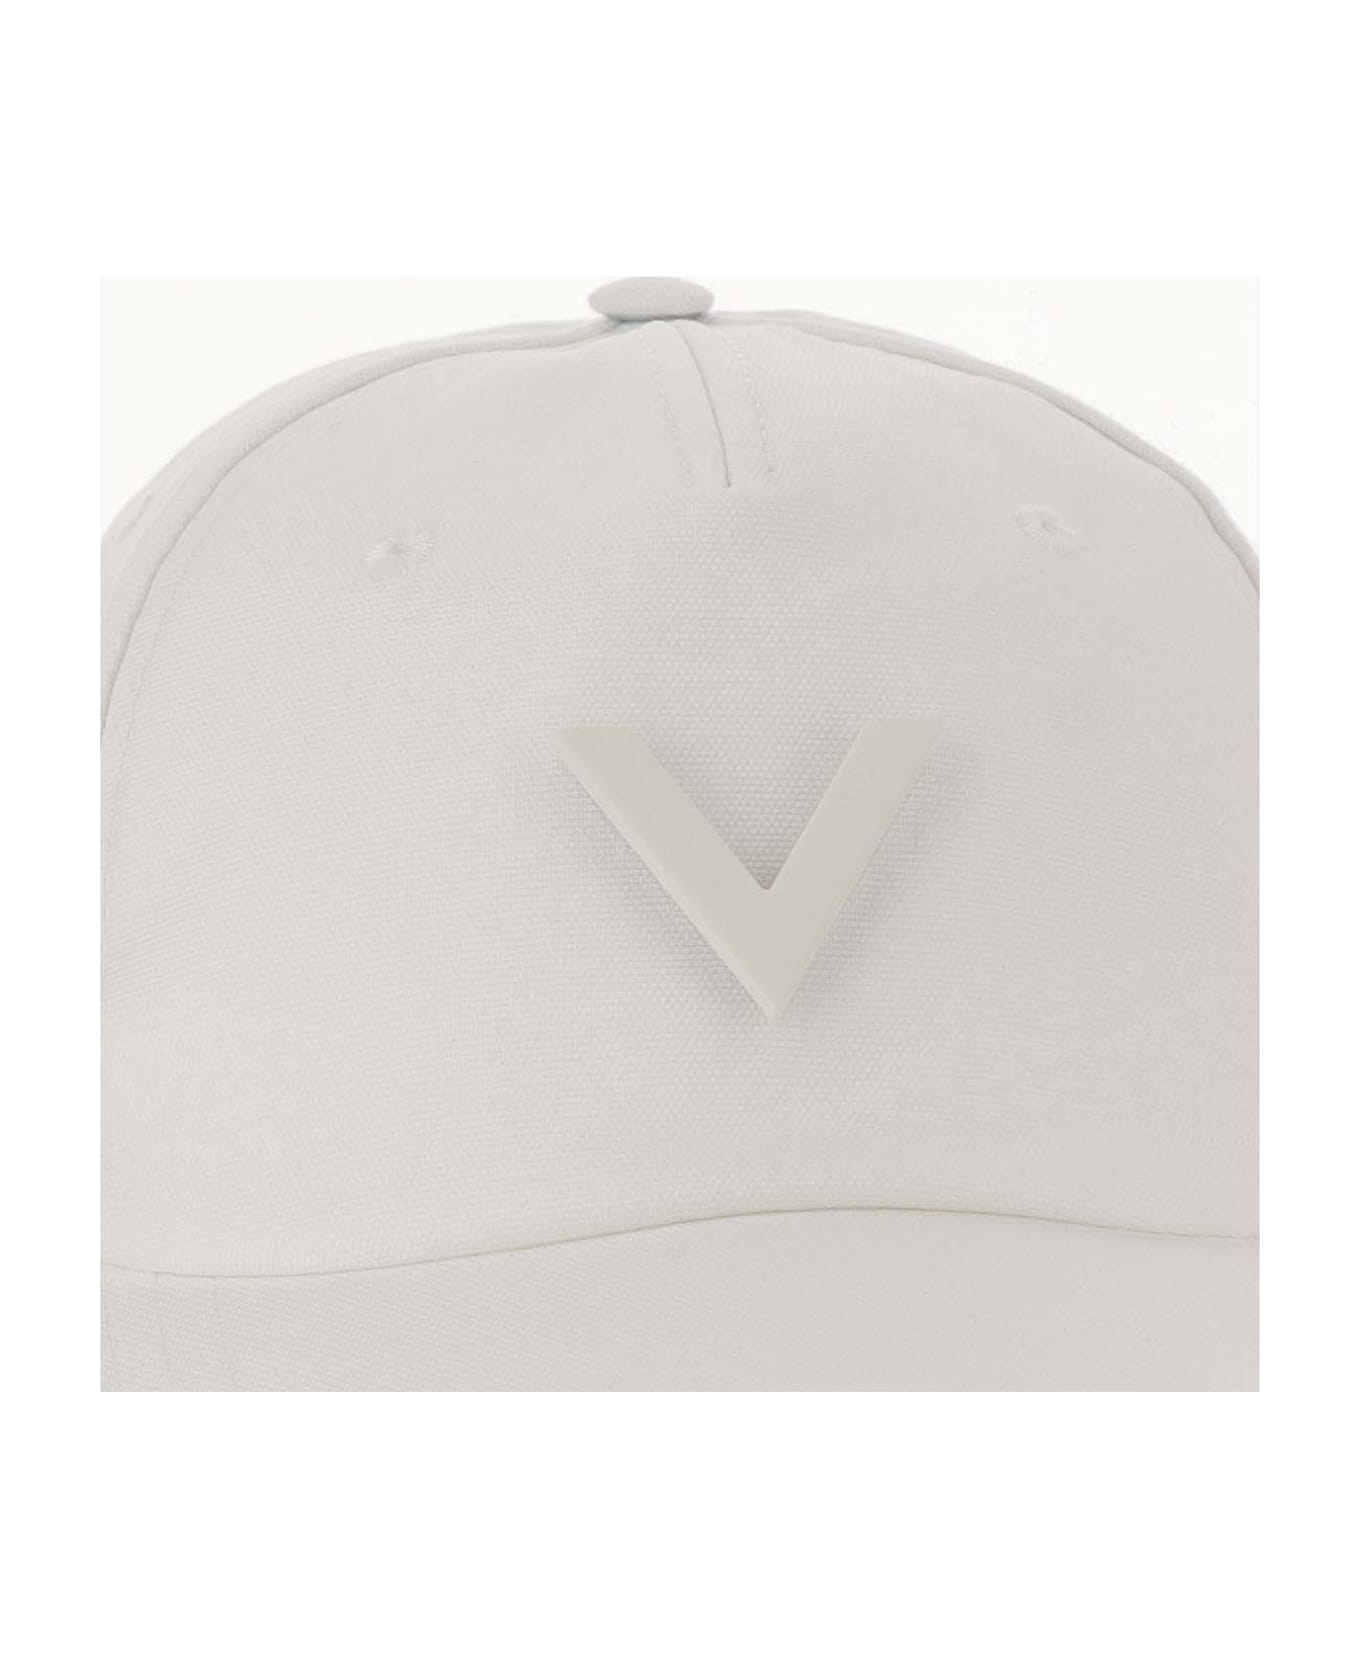 Valentino Garavani Canvas Hat With Vlogo - Ivory 帽子